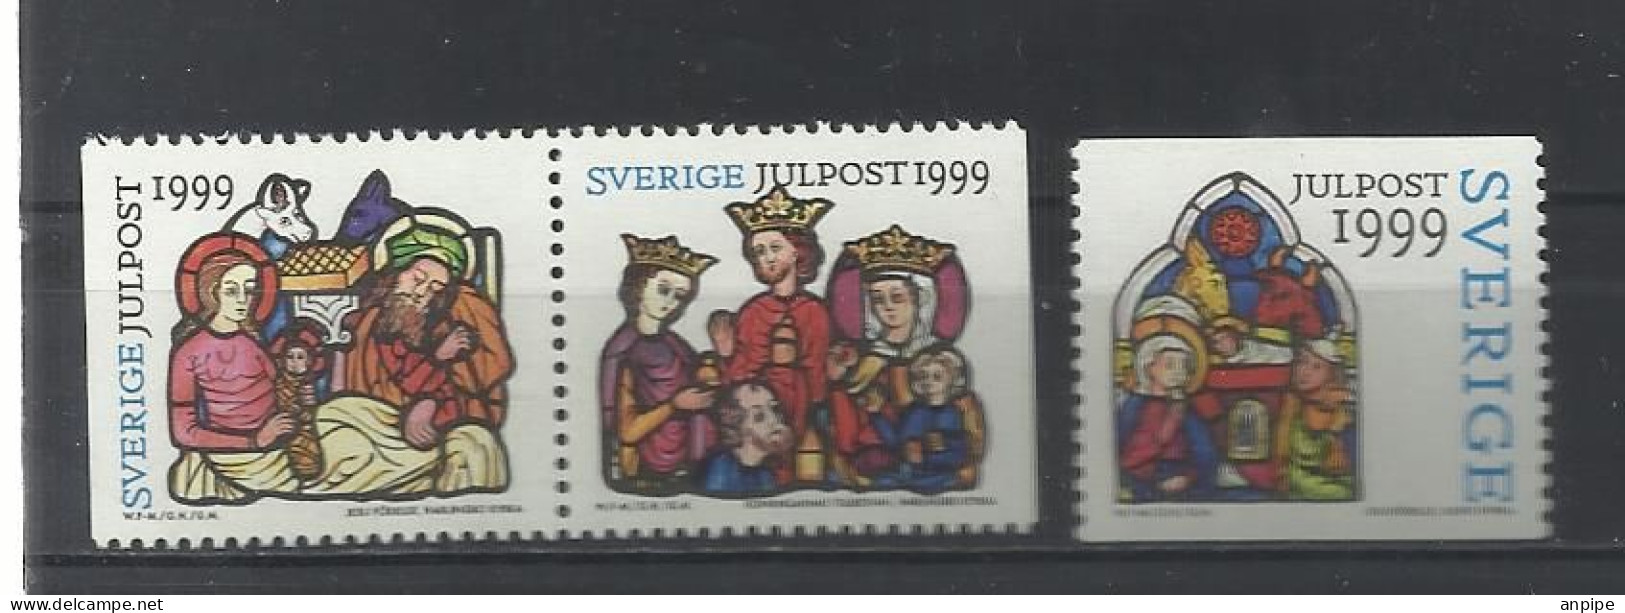 SUECIA, 1999 - Unused Stamps